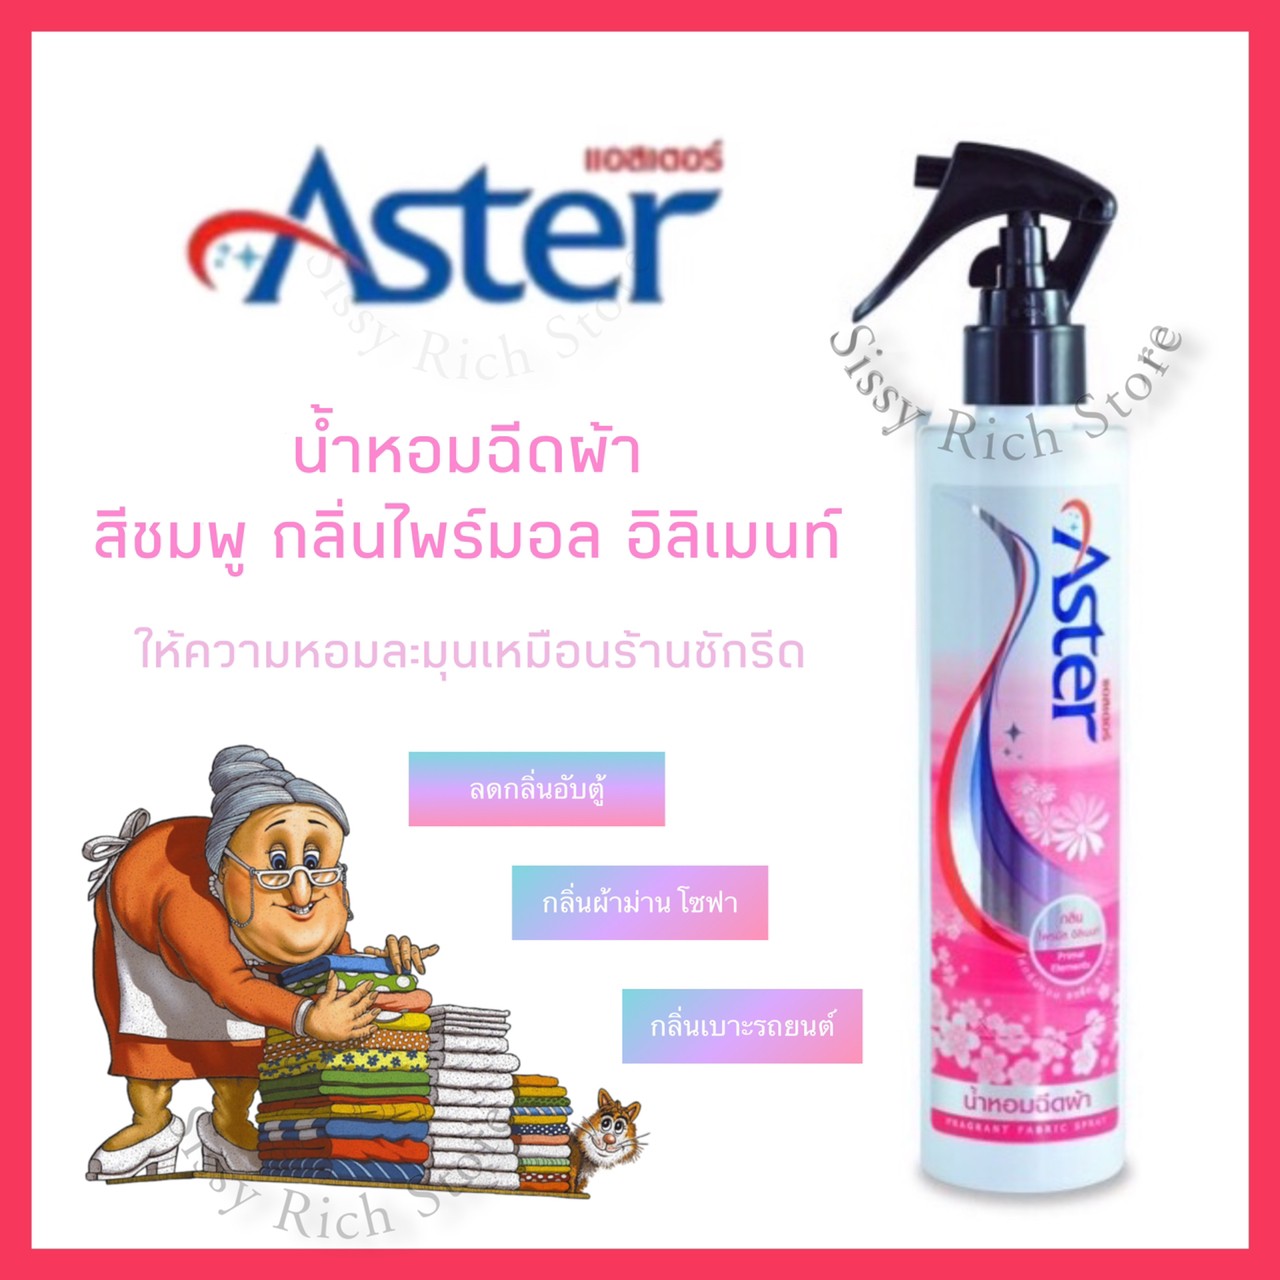 ASTER น้ำหอมฉีดผ้า [สีชมพู] กลิ่น Primal Elements แอสเตอร์ สเปรย์ฉีดผ้ากลิ่นหอมละมุน น้ำยาฉีดผ้าหอมเกรดพรีเมี่ยม ดับกลิ่นอับผ้า